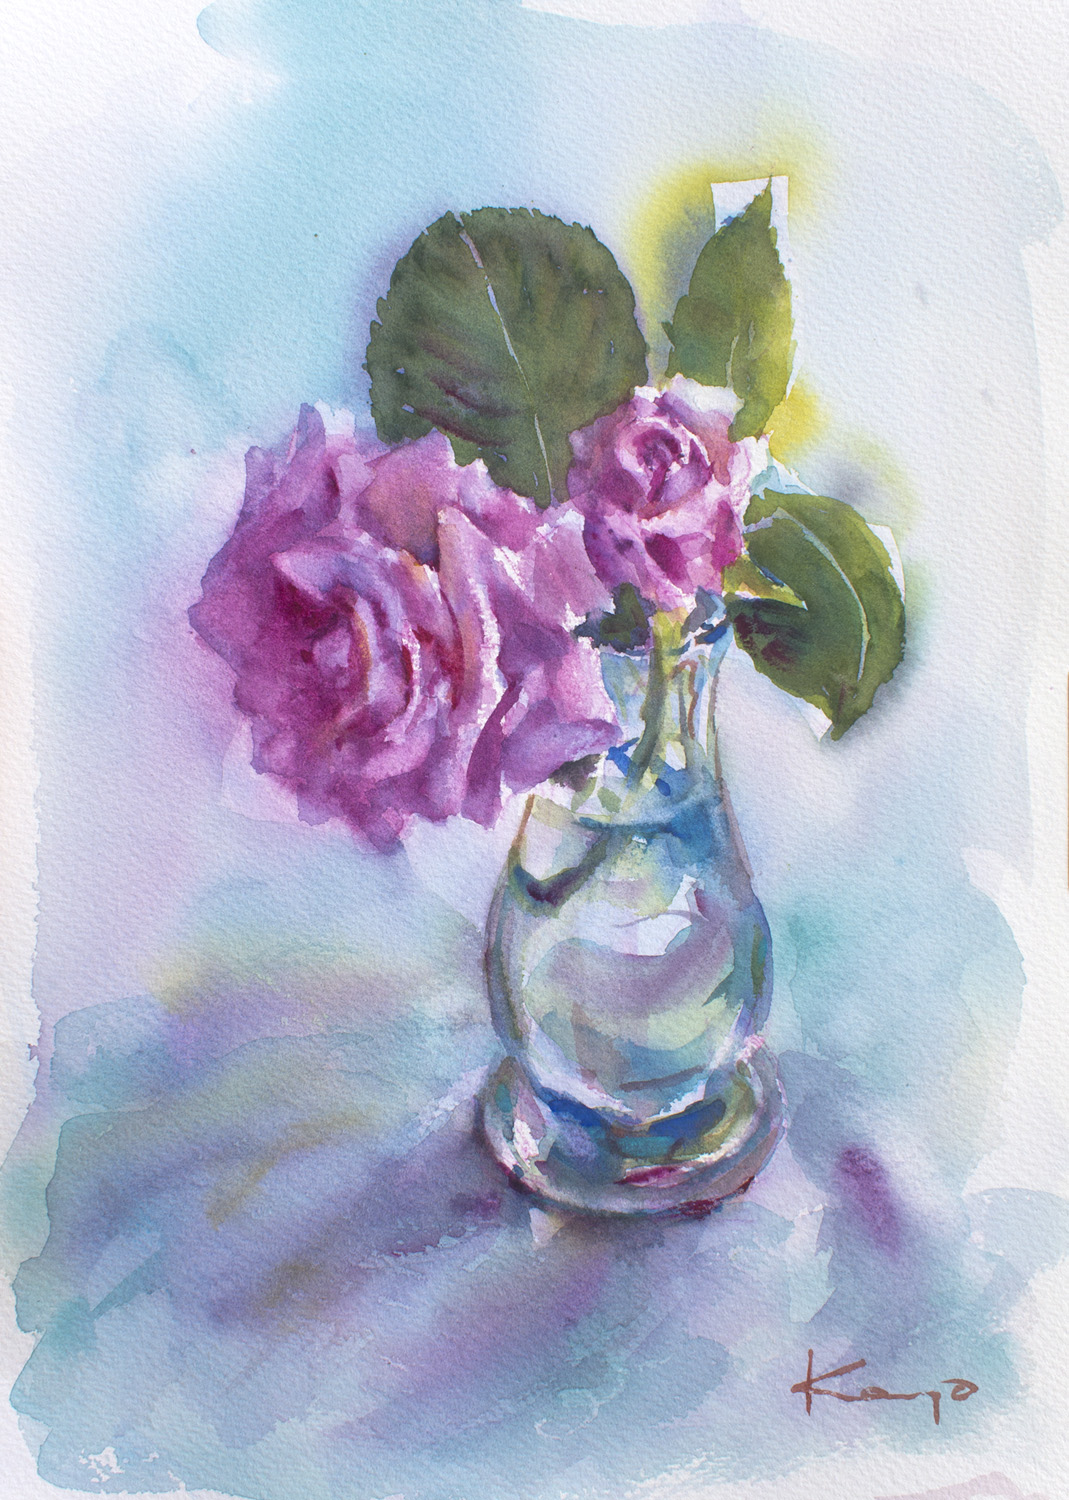 薔薇とガラス アート インテリア絵画の通販 販売サイト Thisisgallery ディスイズギャラリー